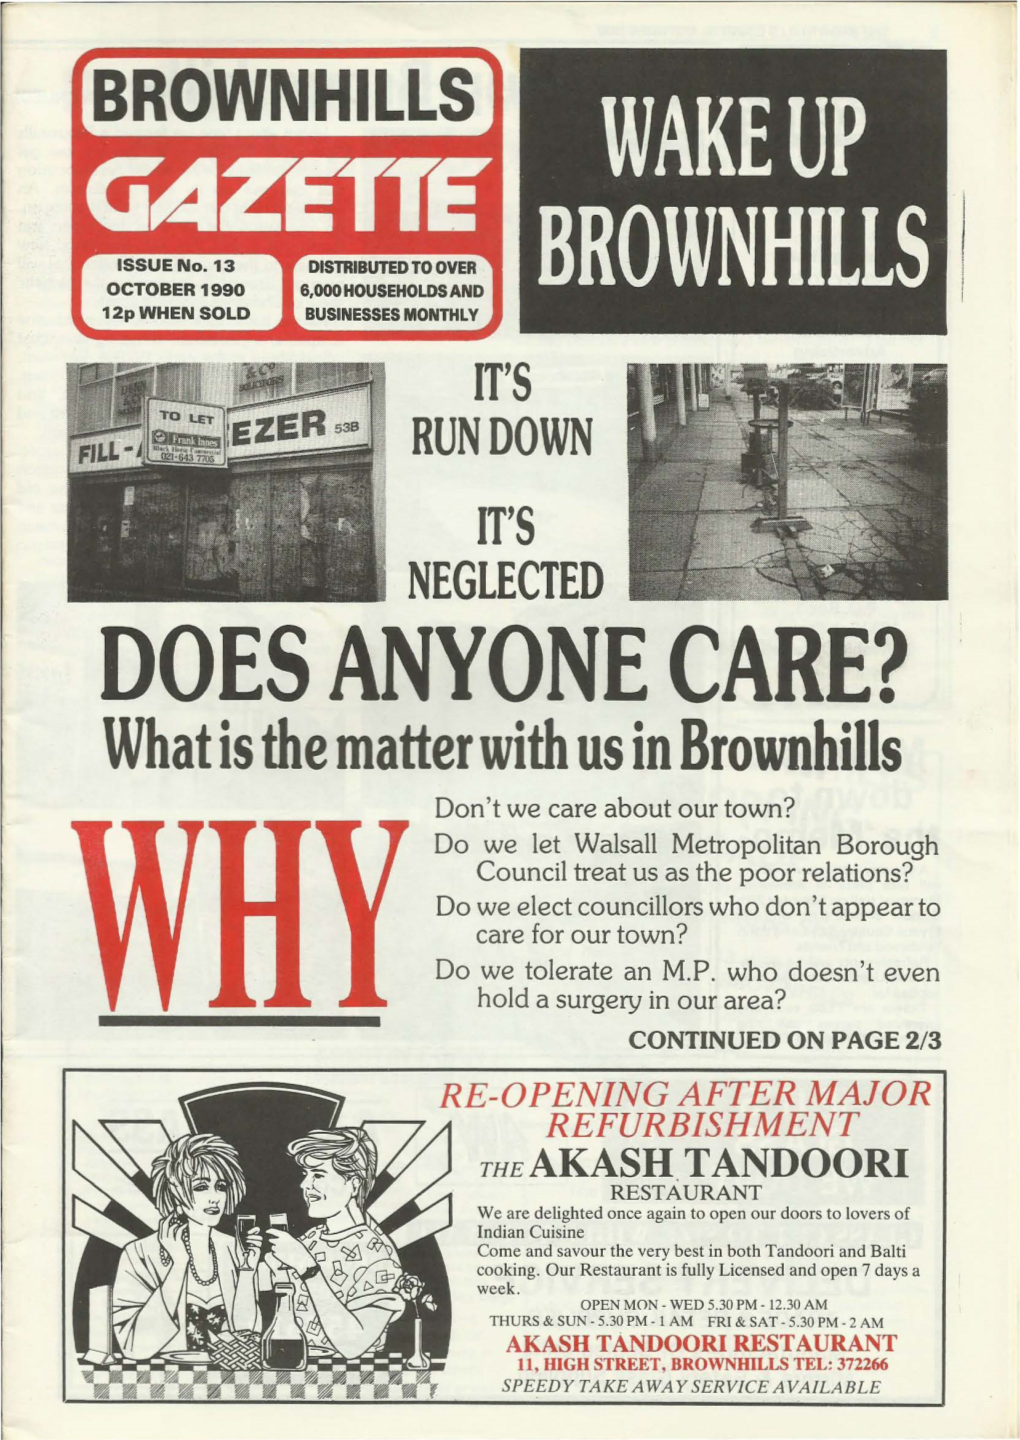 Brownhills Gazette Issue 13 October 1990